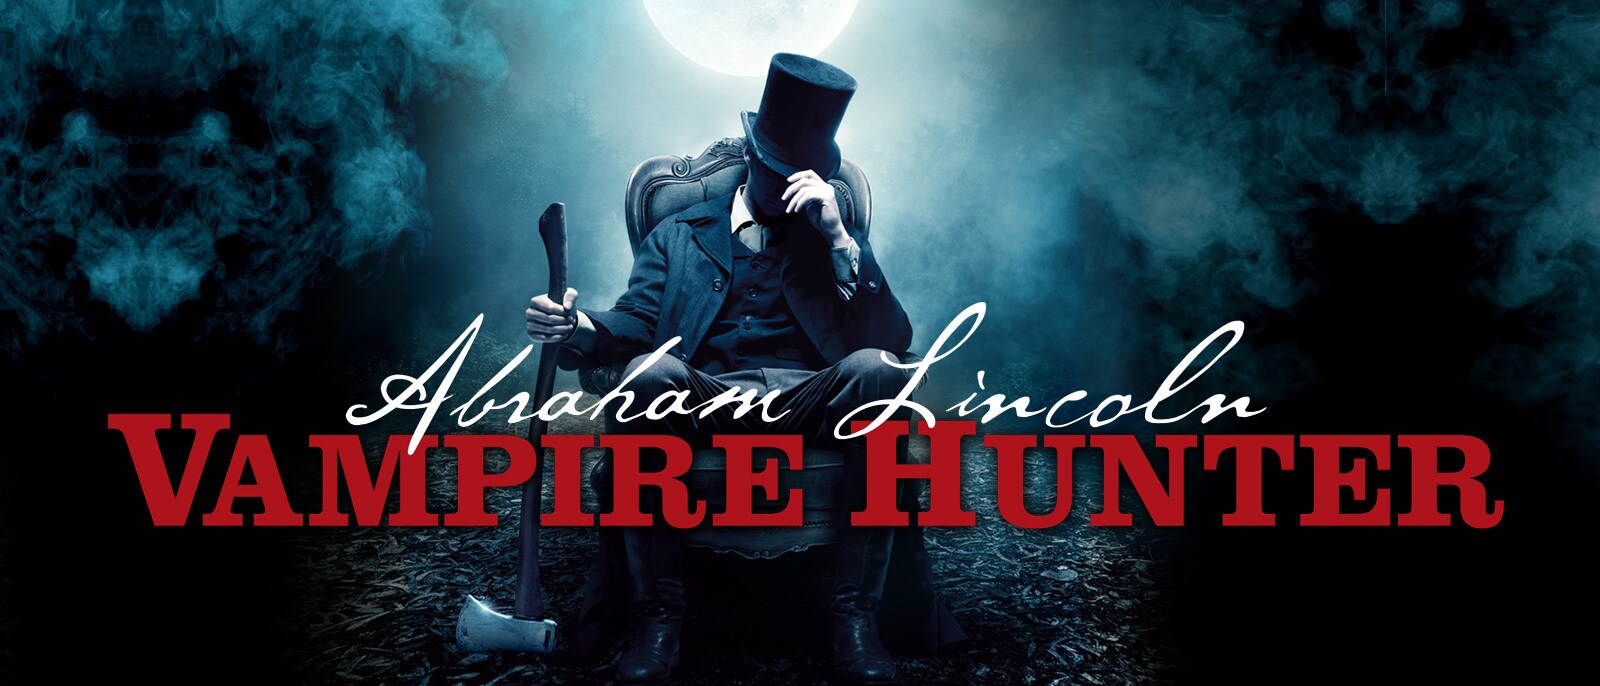 abraham lincoln vampire hunter cover art